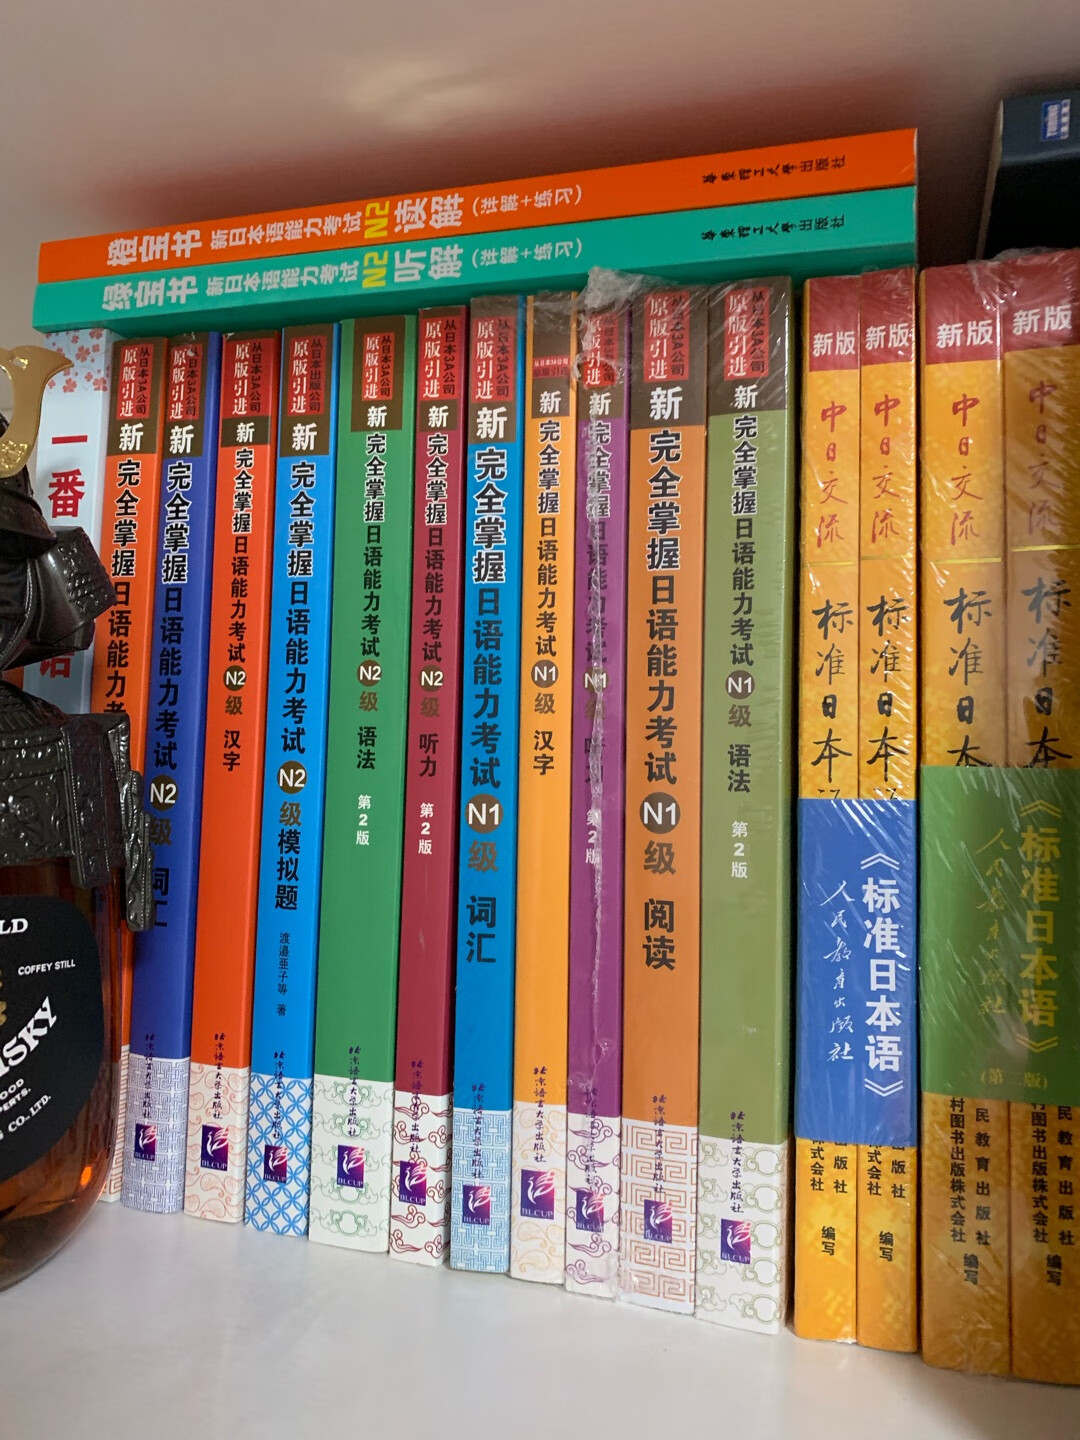 日语书已备齐，希望可以督促自己好好学习。因为兴趣而学，没给自己太大压力。